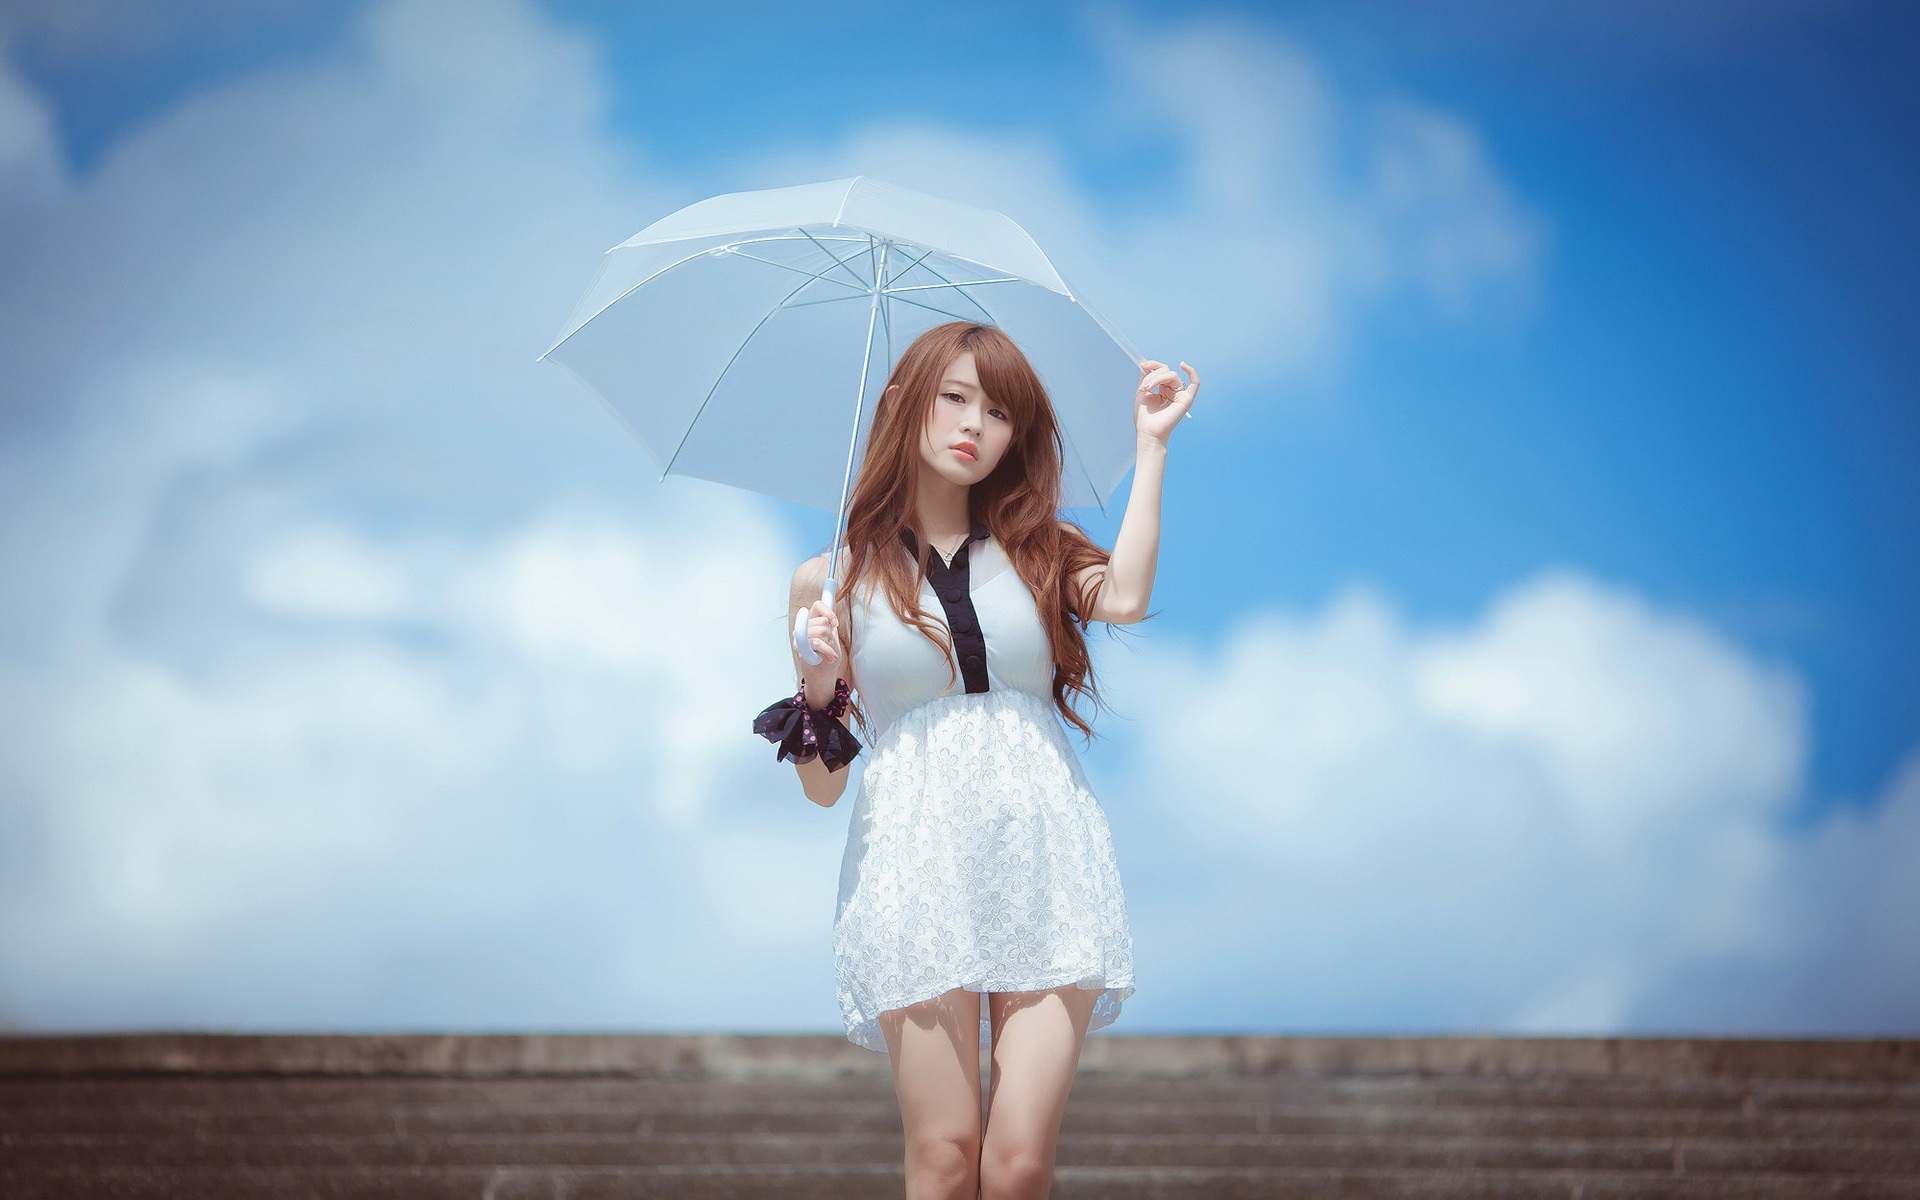 White-dress-Asian-girl-umbrella-blue-sky_1920x1200.jpg